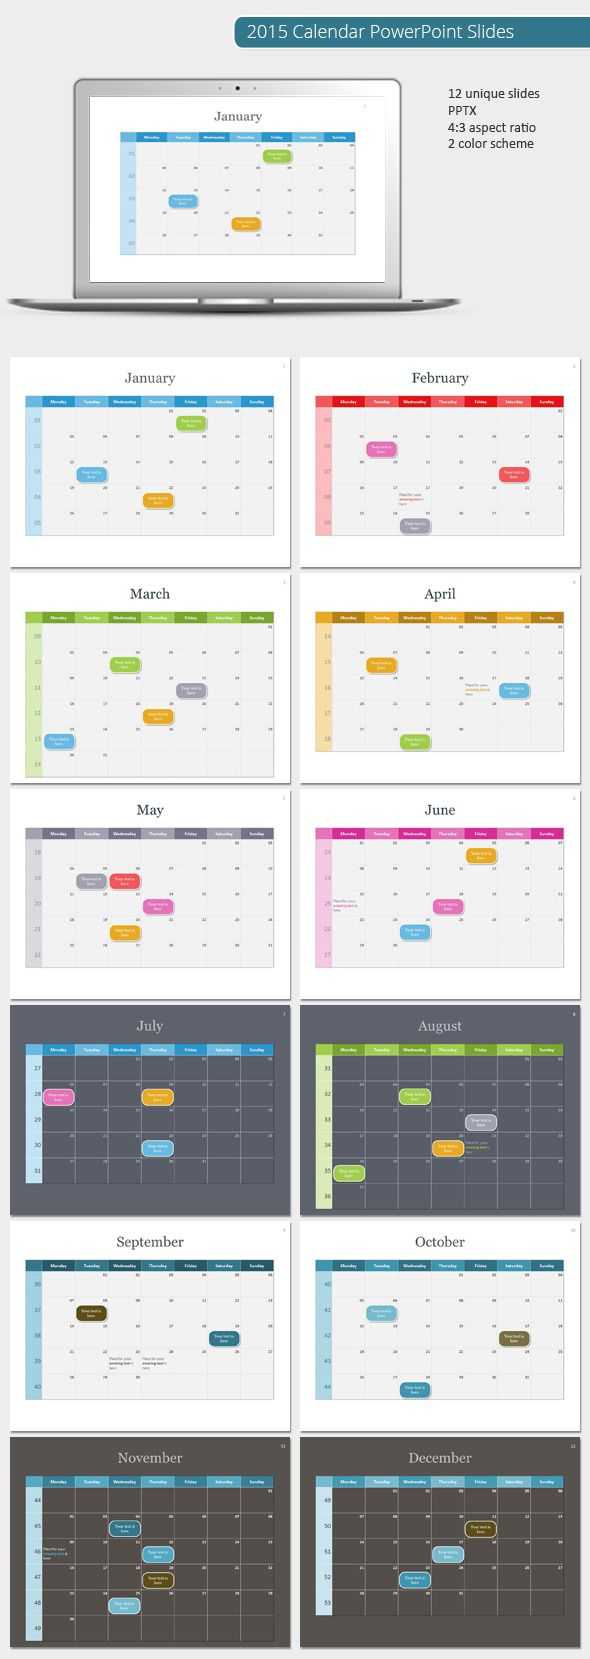 2015 Calendar Powerpoint Template (Powerpoint Templates For Powerpoint Calendar Template 2015